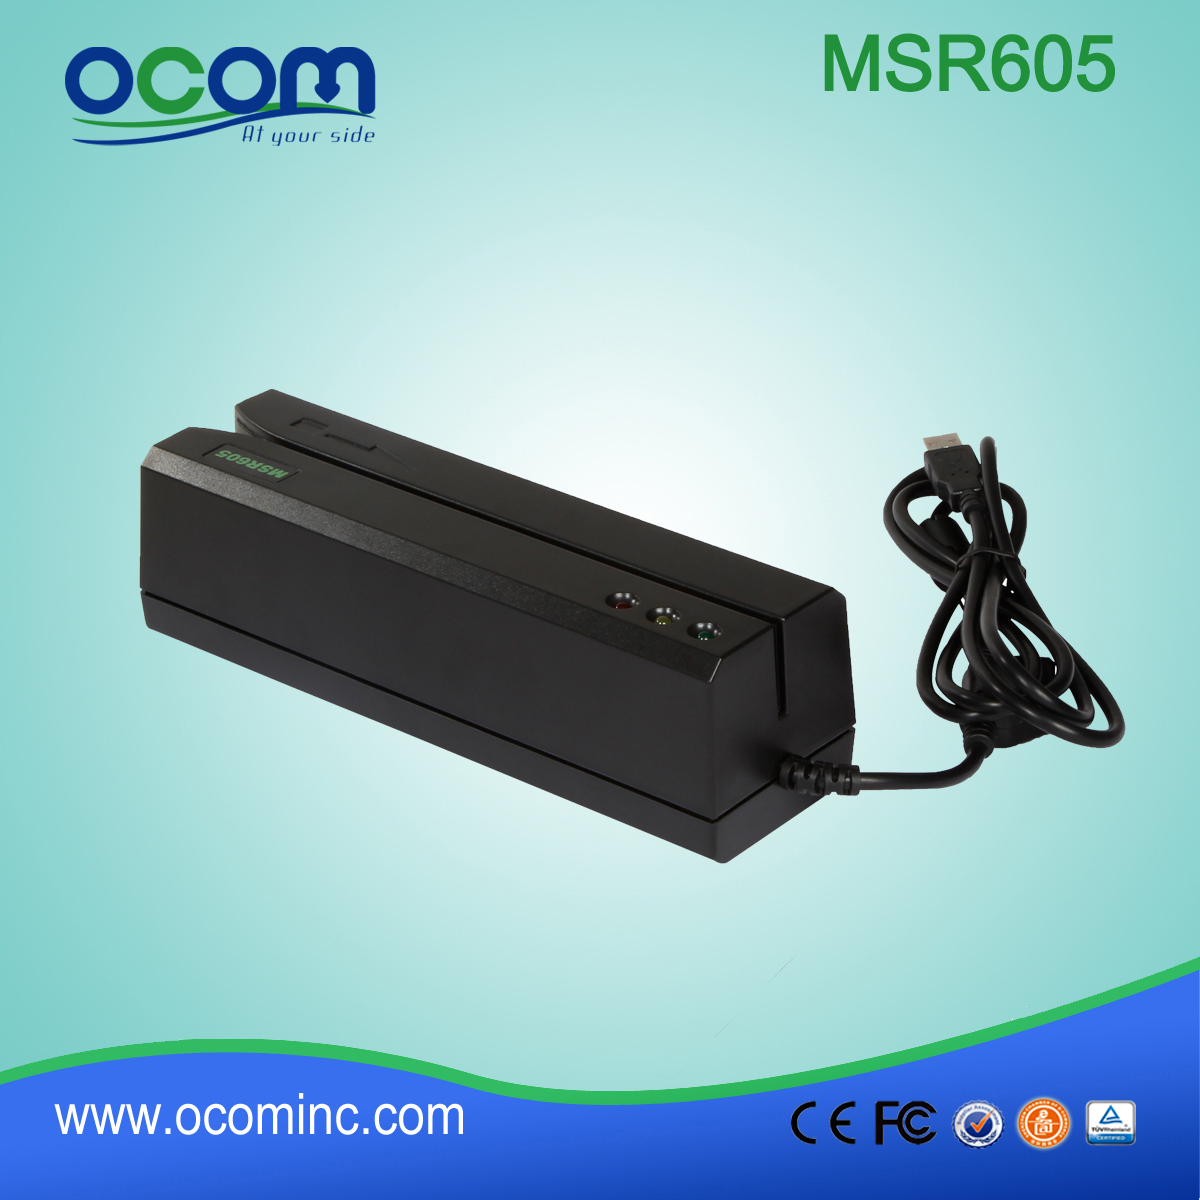 (MSR605) China fez mini-leitor de cartão e RS232 writter, leitor de cartão e writter USB